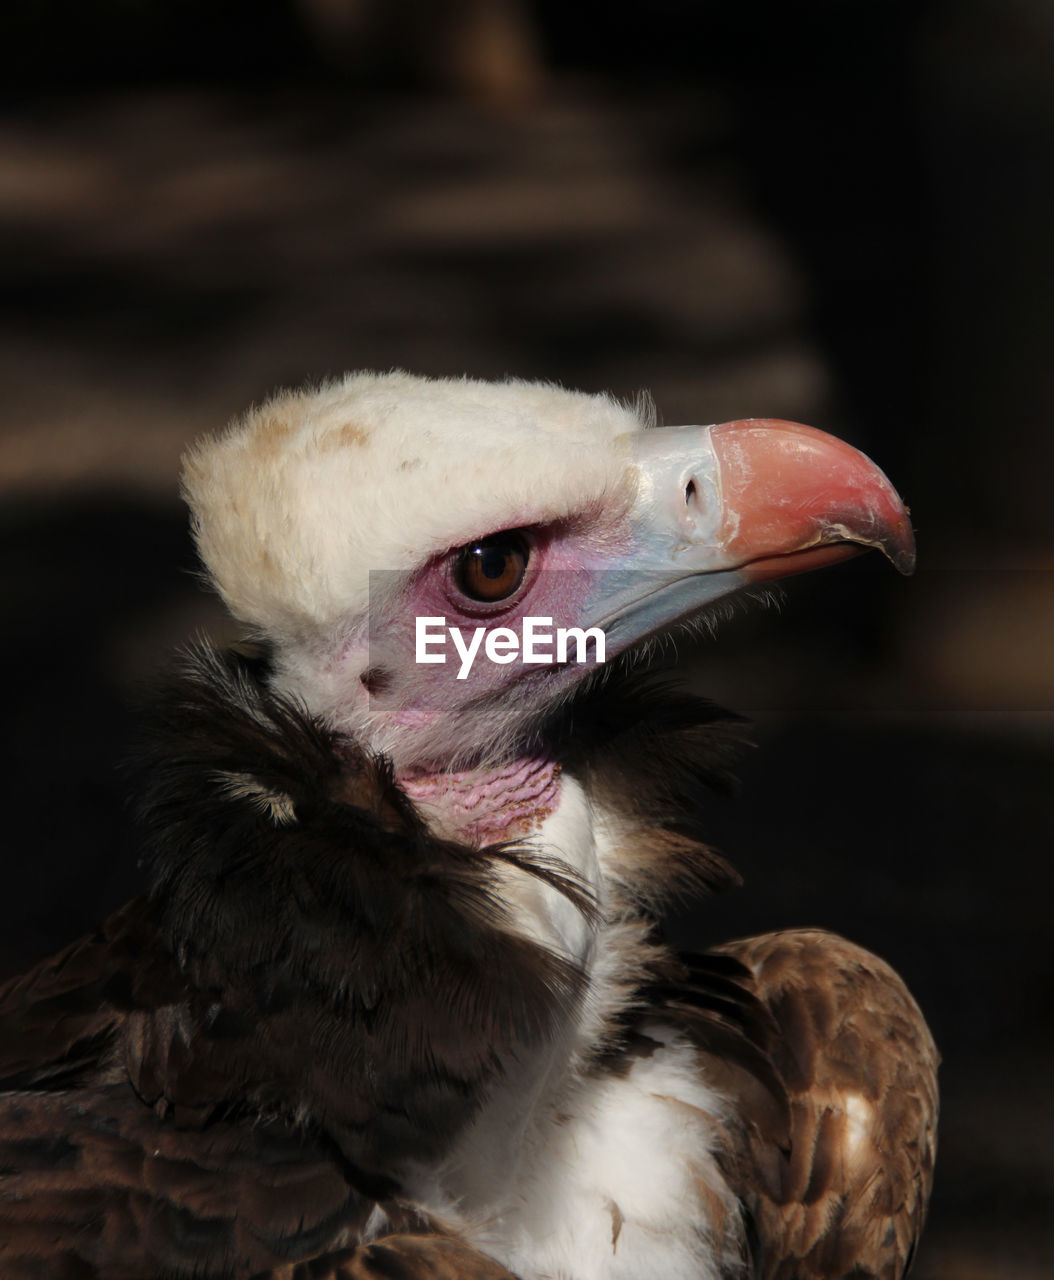 A bird of prey of the eagle family predatory gaze sharp beak